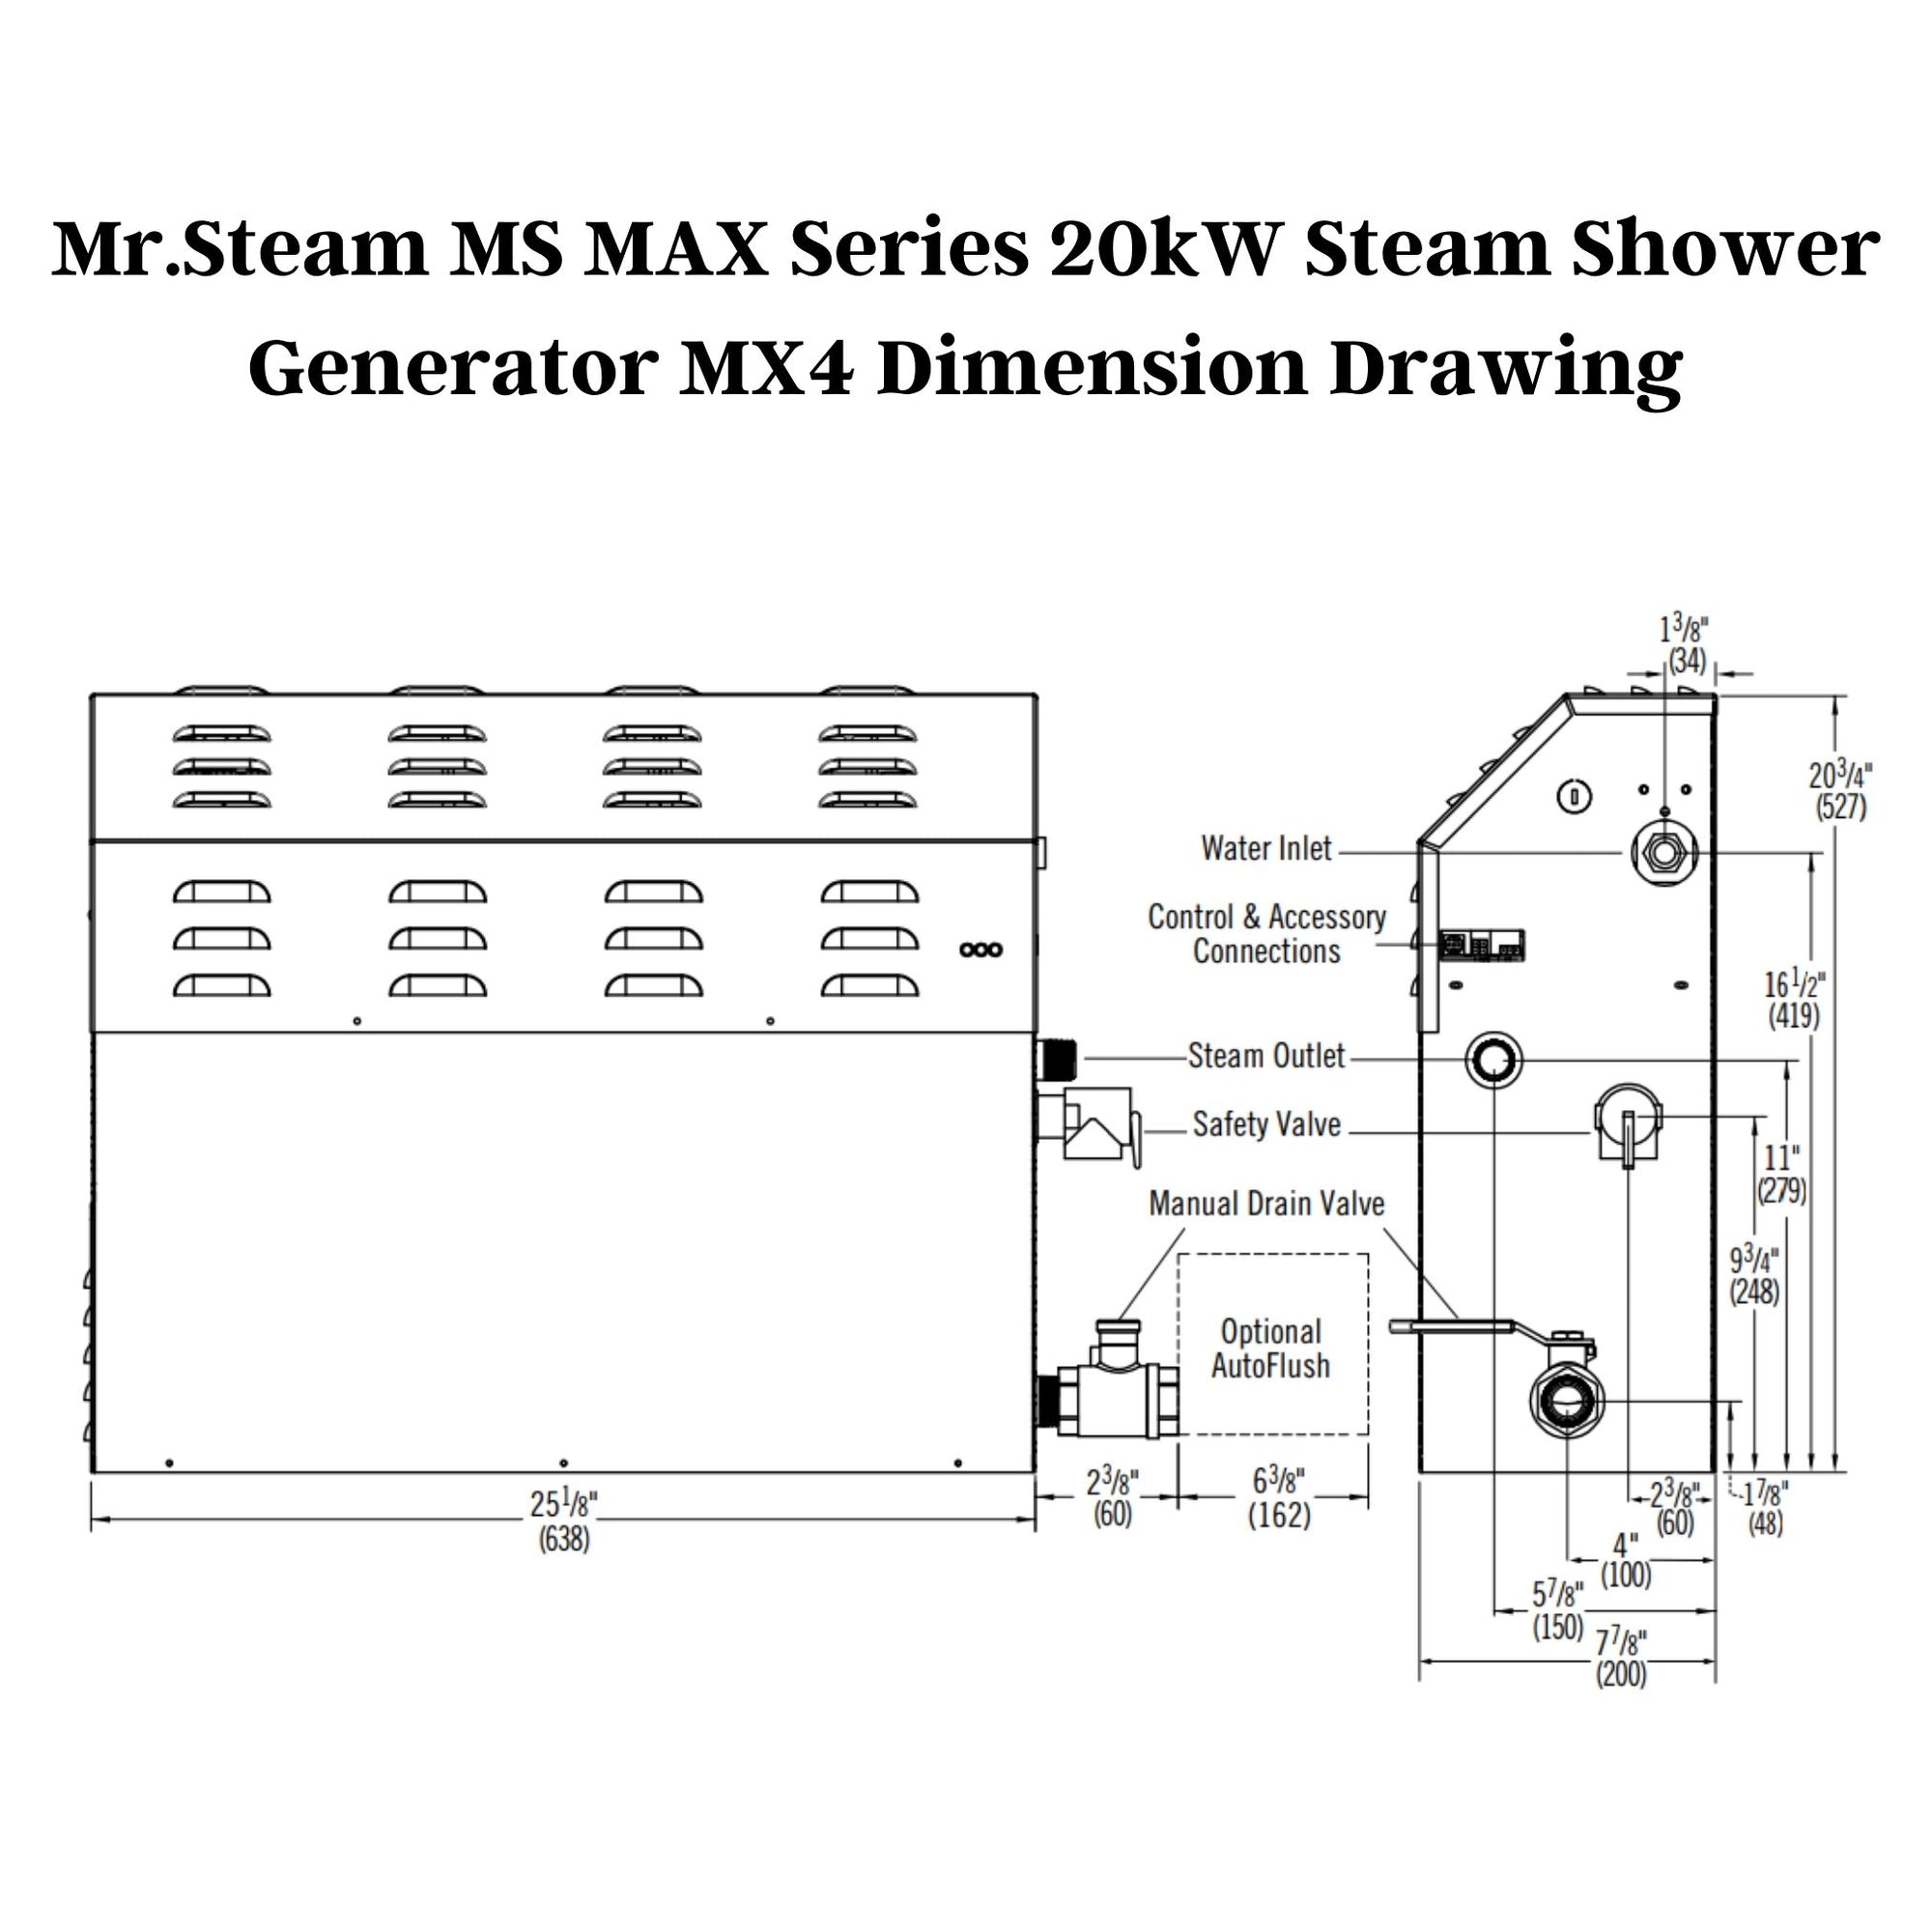 Mr. Steam 20kW MS MAX Series Steam Shower Generator MX4